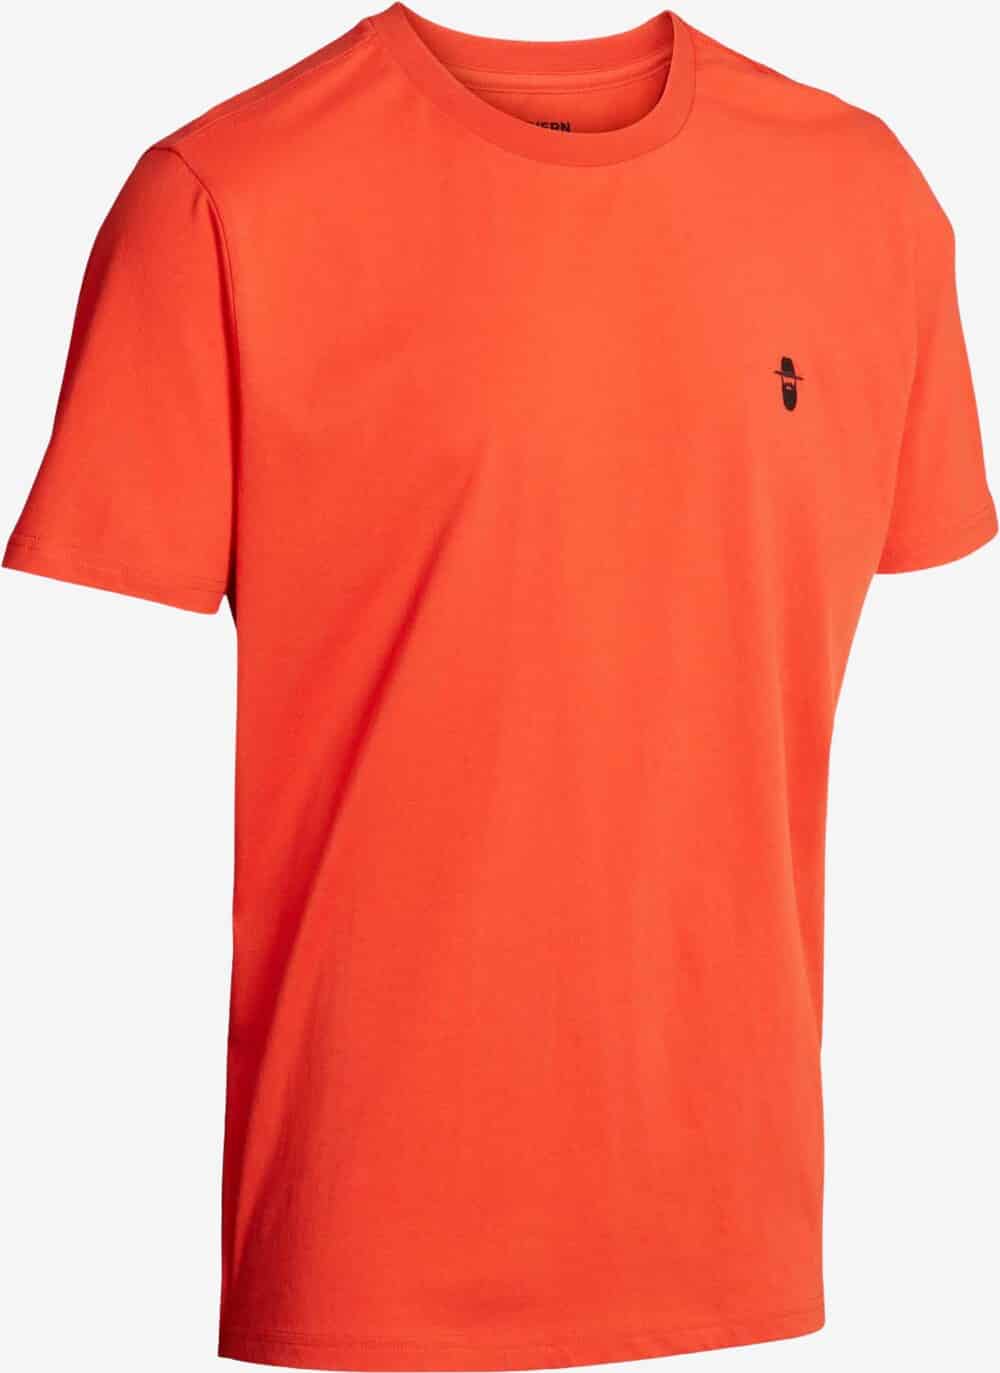 Northern Hunting - Karl T-shirt (Orange) - M